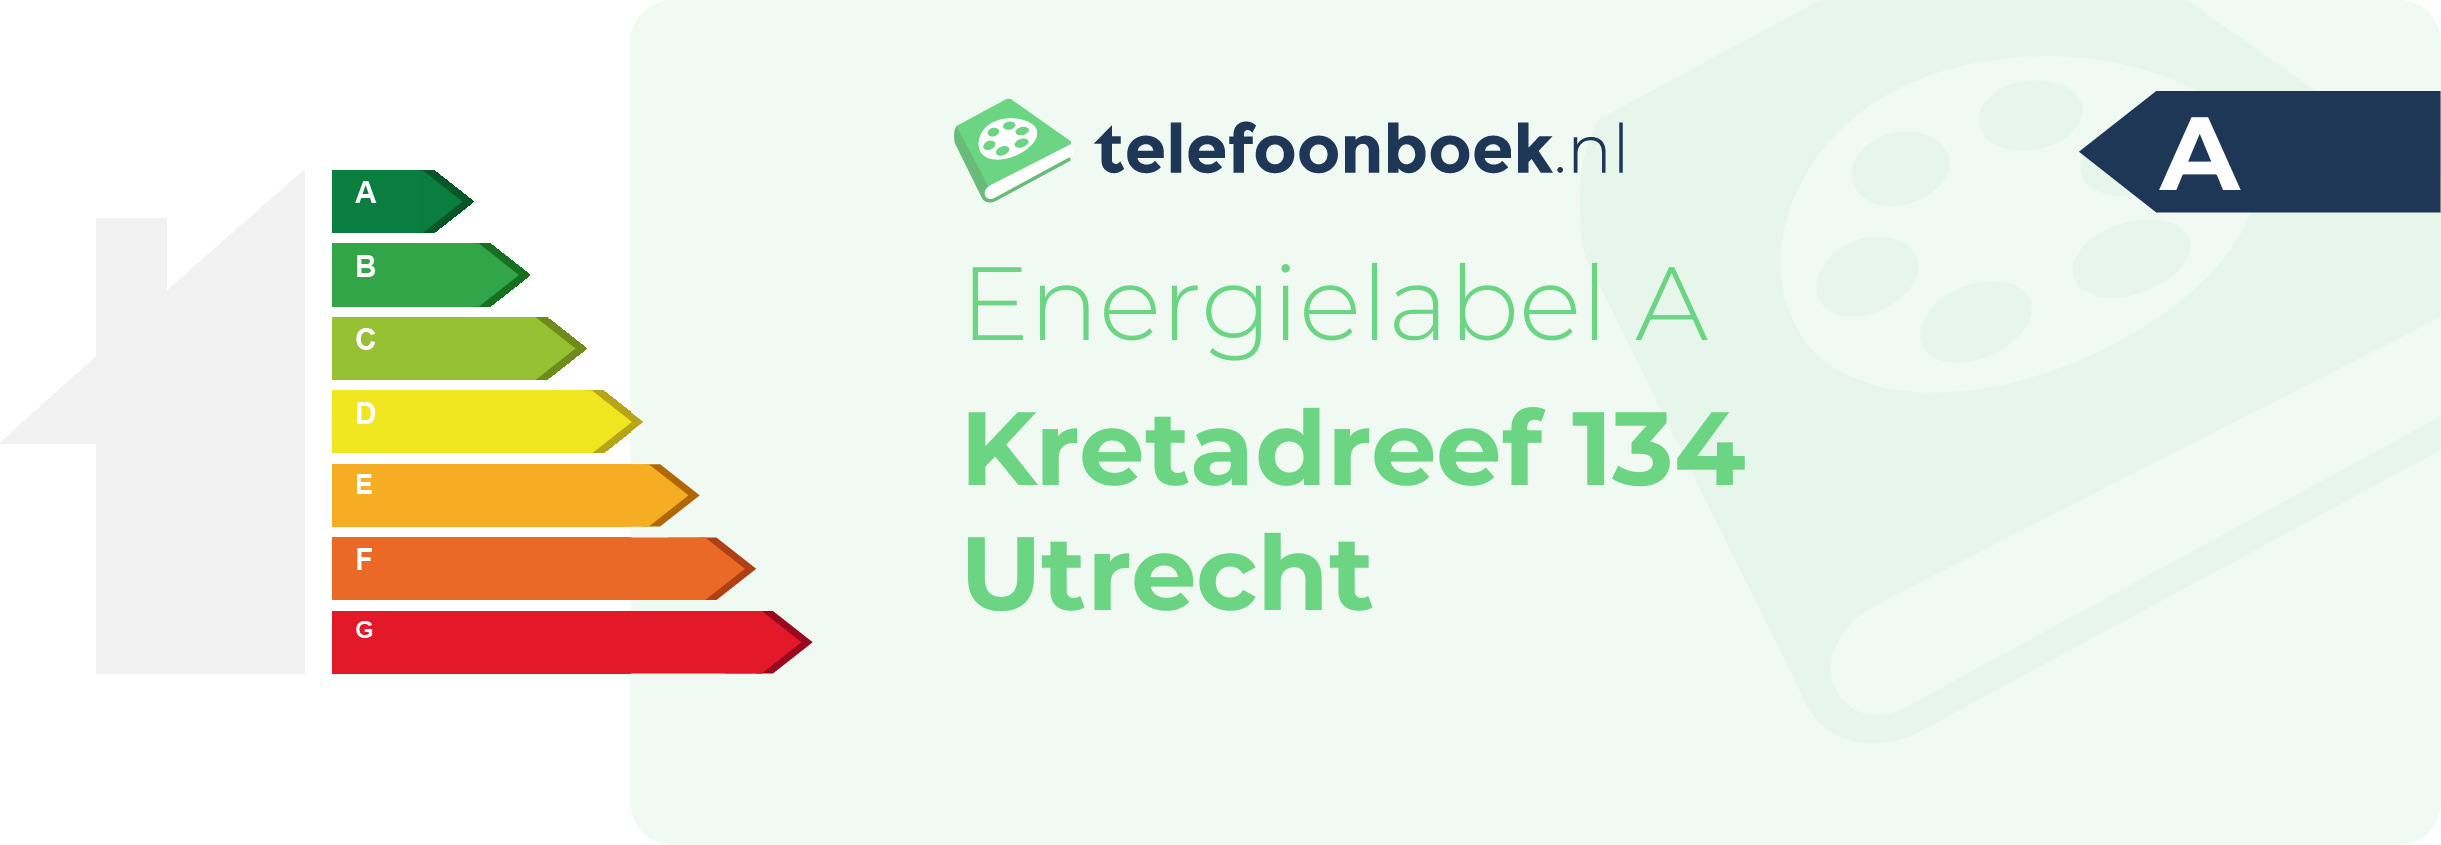 Energielabel Kretadreef 134 Utrecht